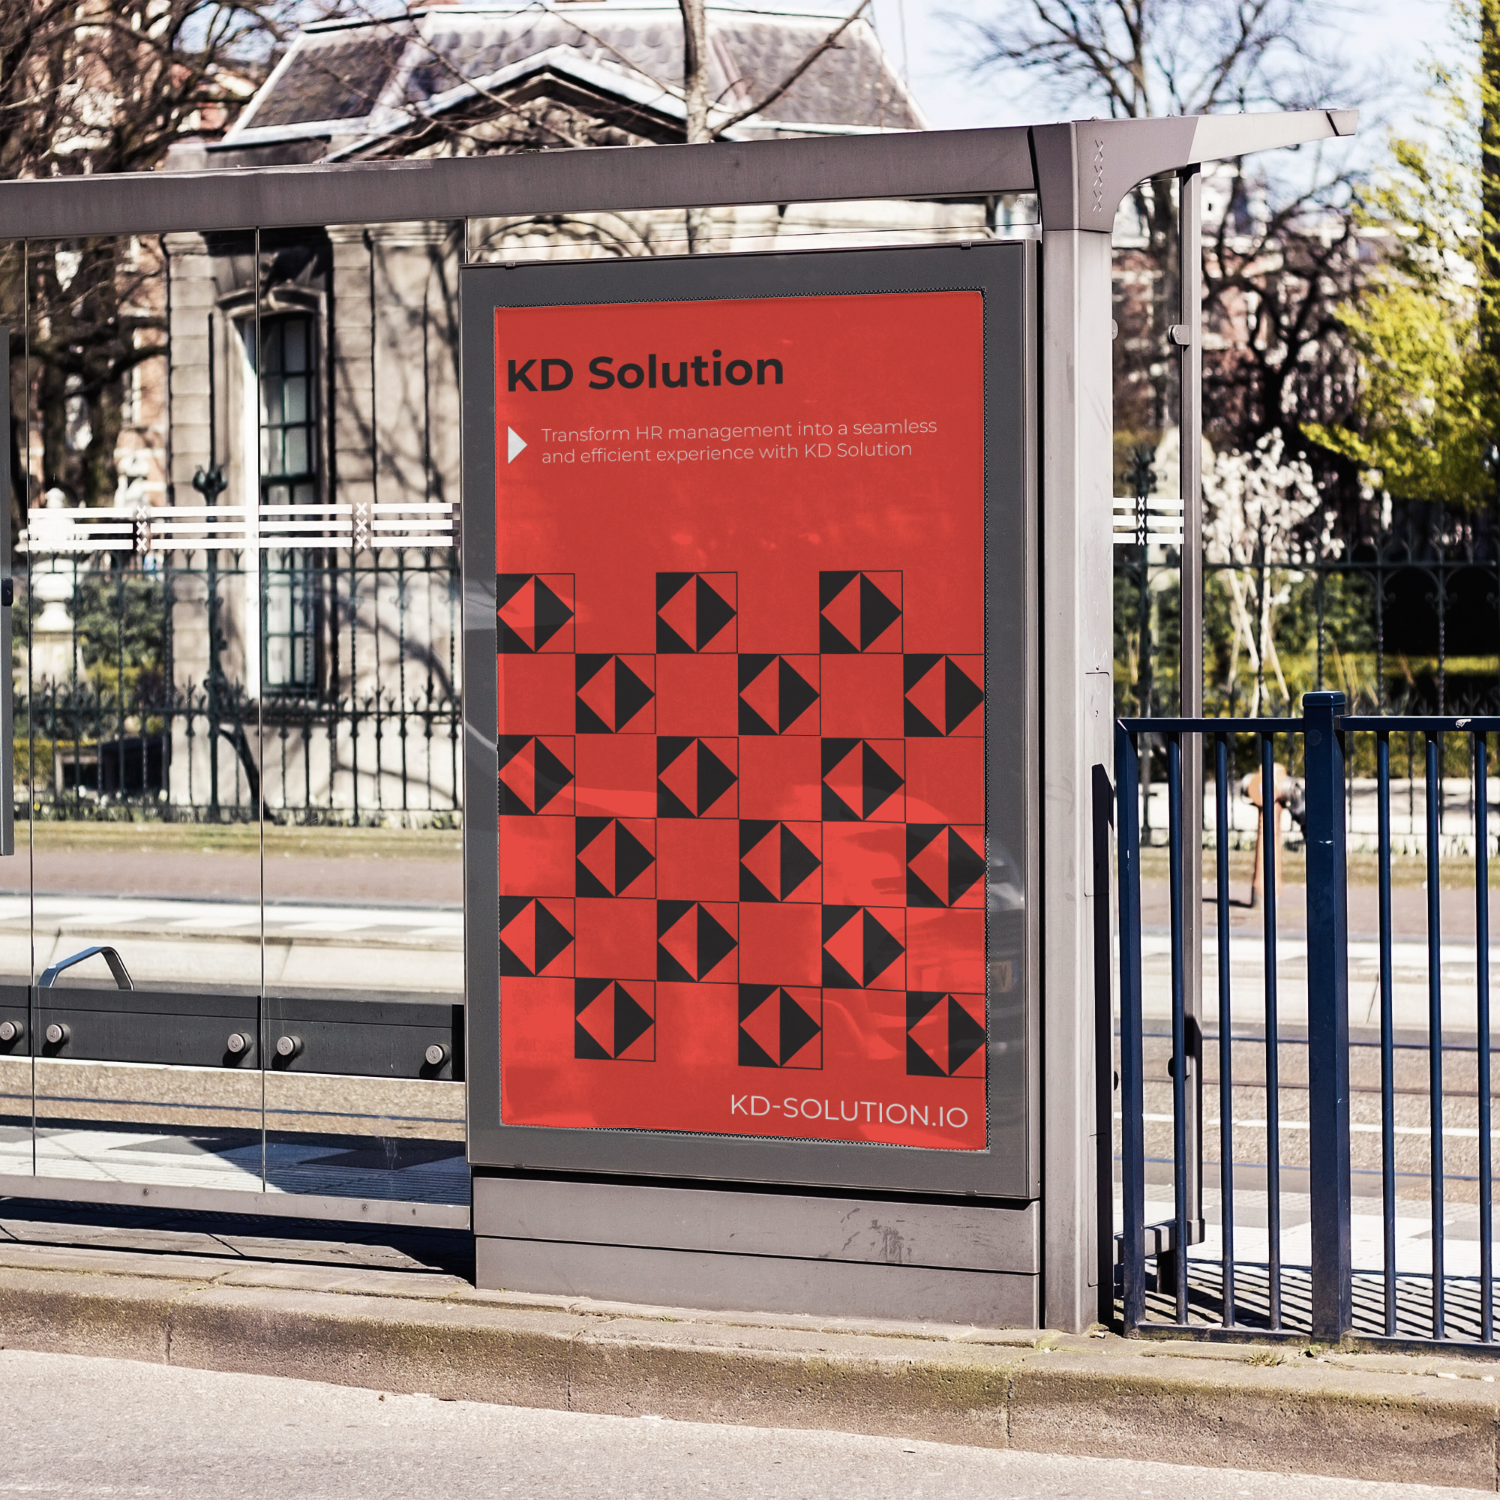 KD-solution Branding Start up - Affiche publicitaire Vanhuffel (2)